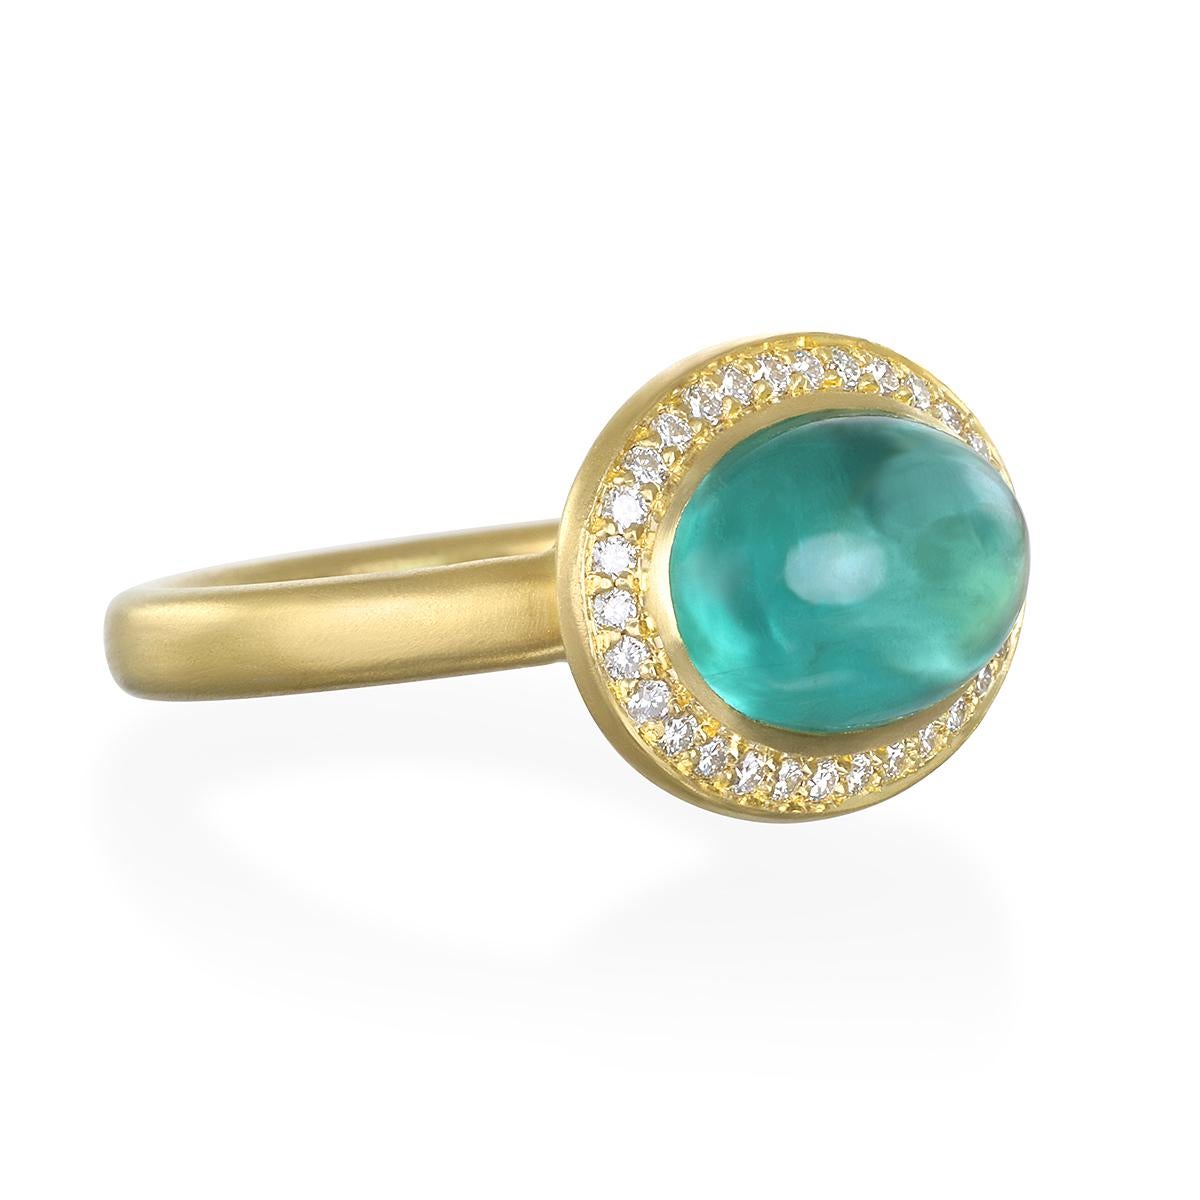 Faye Kims spektakulärer 18-Karat-Gold-Diamant-Halo-Ring mit blaugrünem Turmalin erinnert mit seiner matten Oberfläche sowohl an den modernen als auch an den Vintage-Stil. Der leuchtend blaugrüne Farbton des Turmalins wird durch den schönen